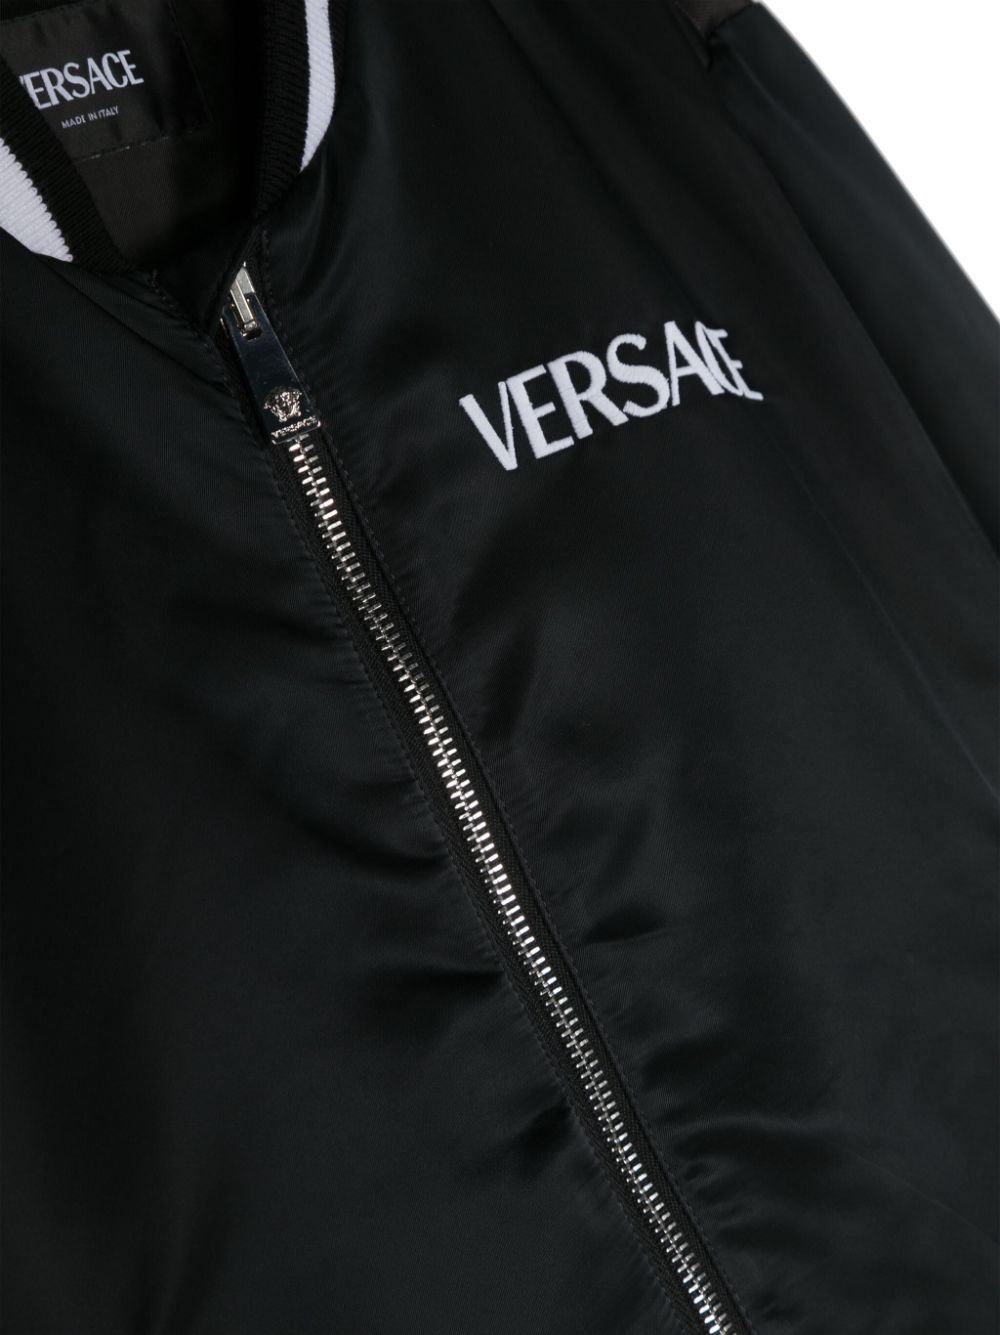 Versace kids jacket